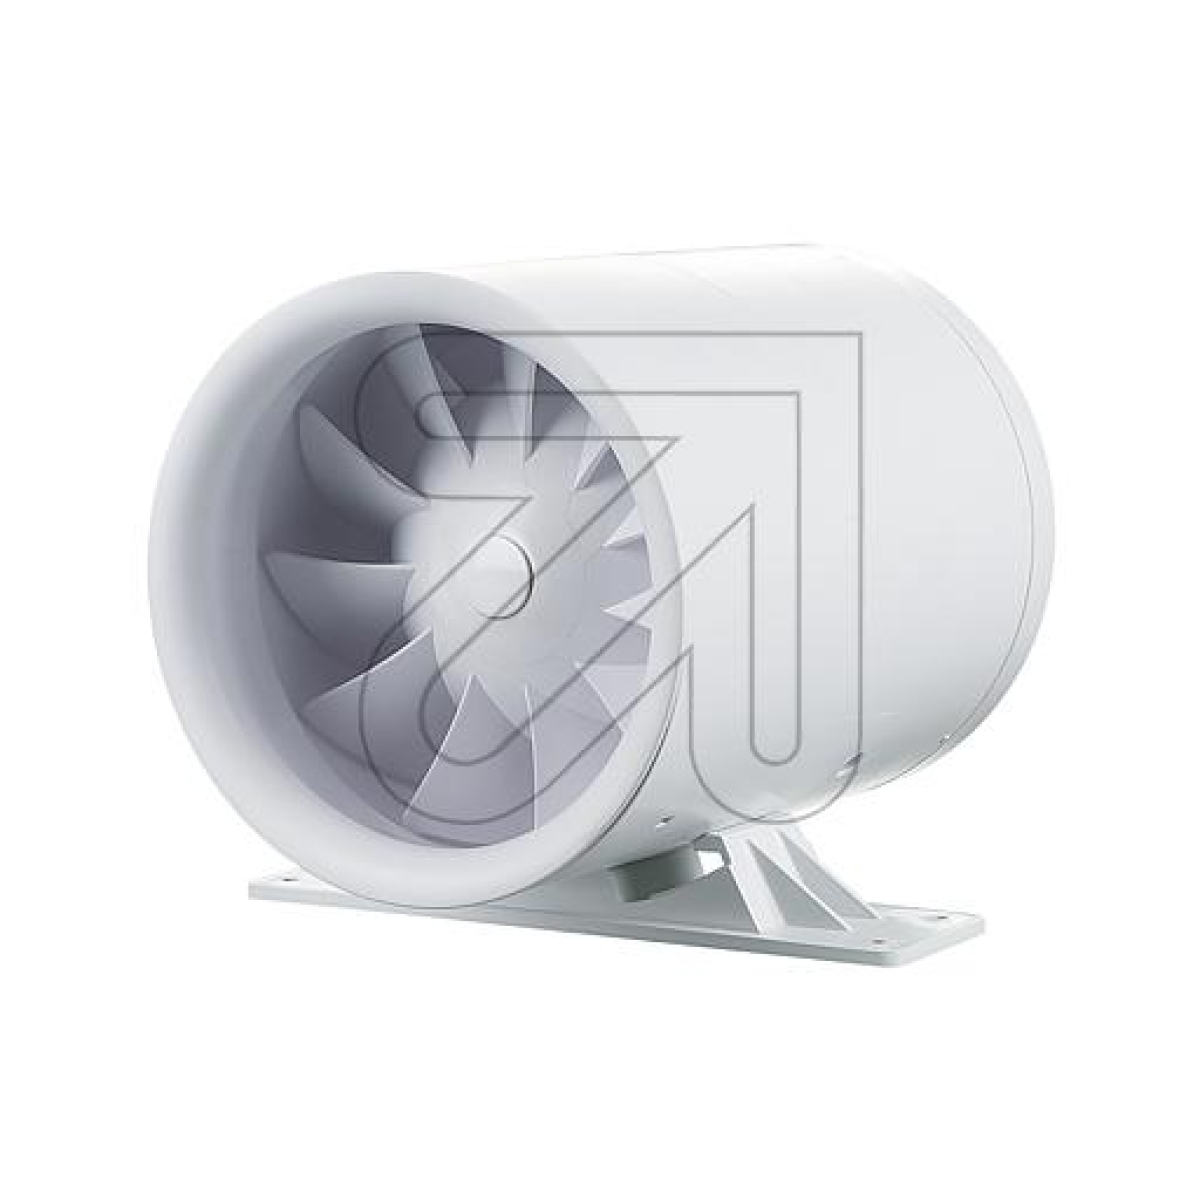 SIKU AIR TECHNOLOGIESRohreinschub-Ventilator SIKU 100 Turbine-k Duo T1Artikel-Nr: 441450